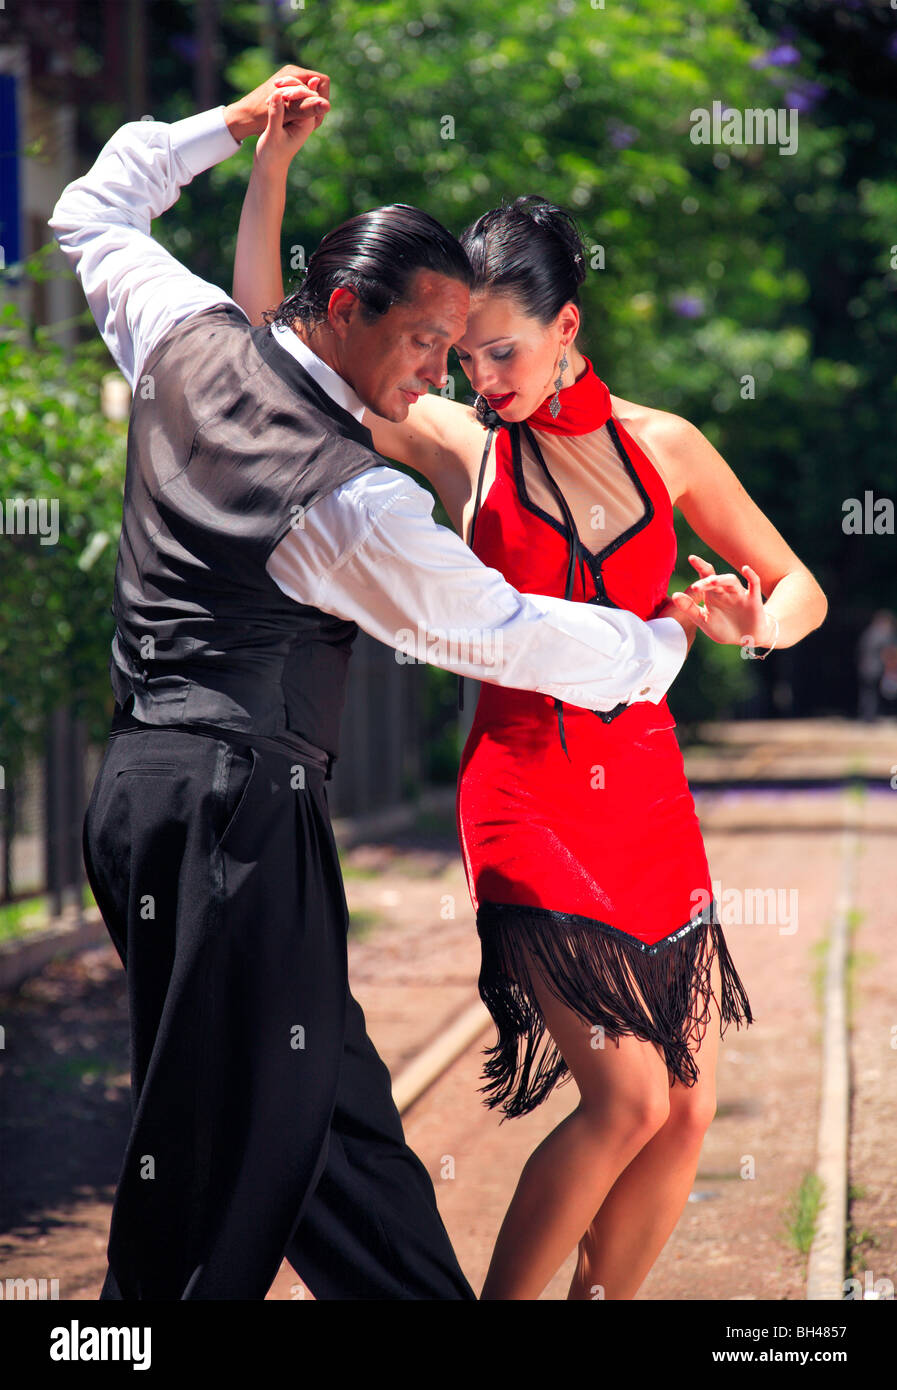 Tango rosso immagini e fotografie stock ad alta risoluzione - Alamy